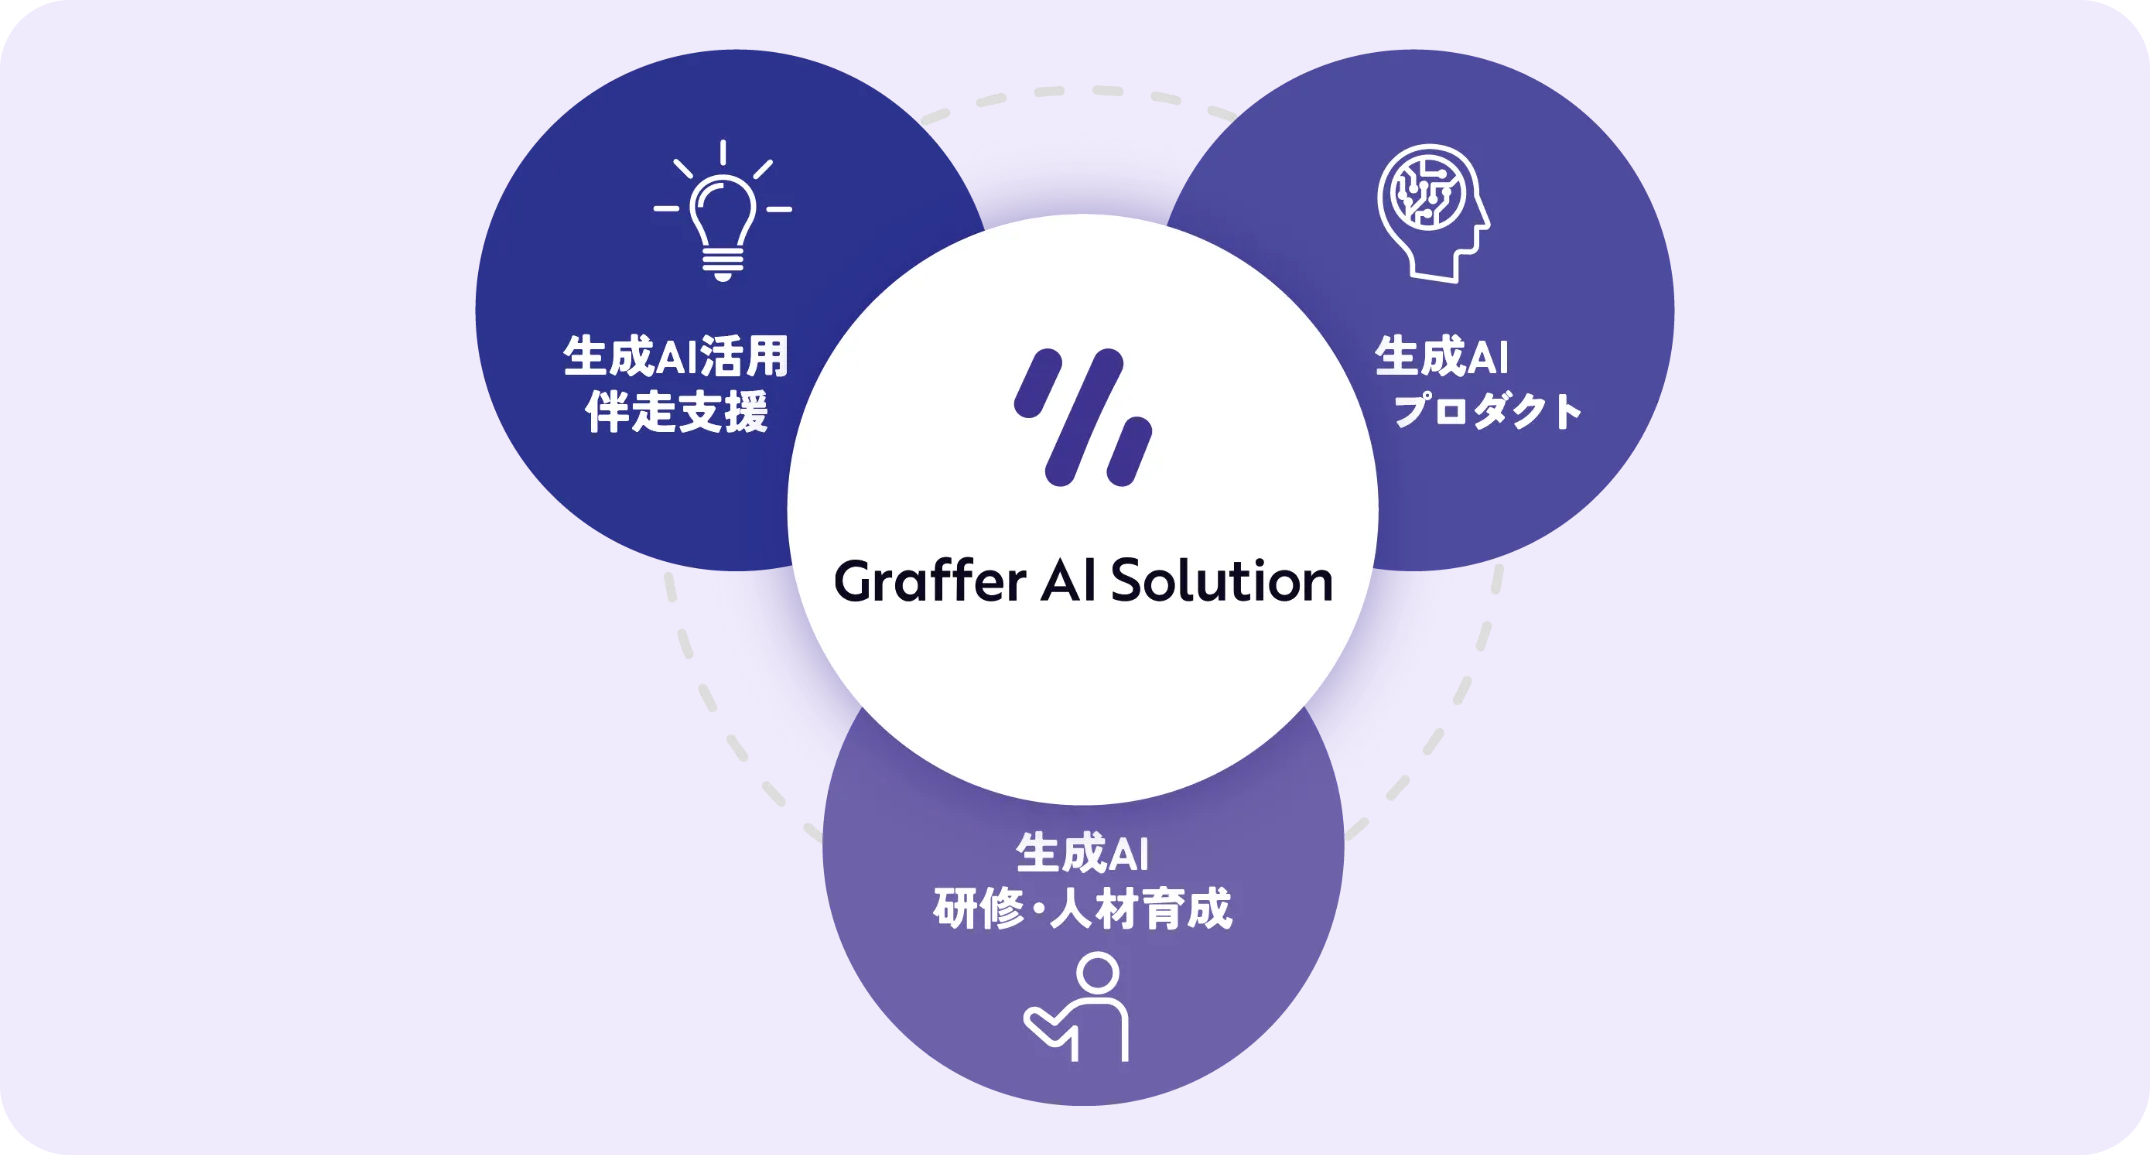 国分グループが「Graffer AI Studio」を導入、全社員4,500人で利用開始